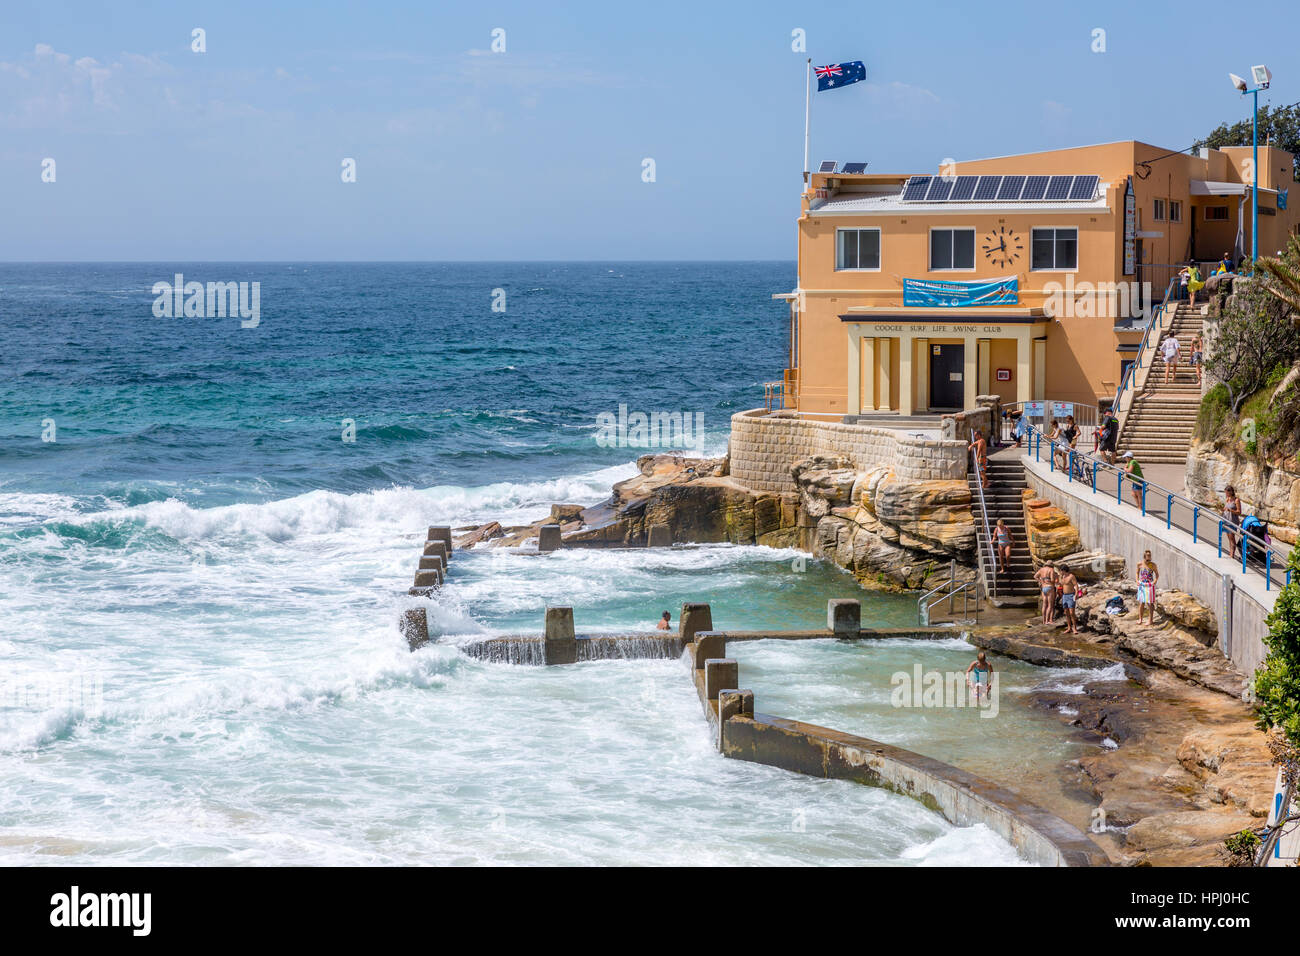 Coogee Beach surf club et la piscine Océan Ross Memorial, Coogee, Sydney, Australie Banque D'Images